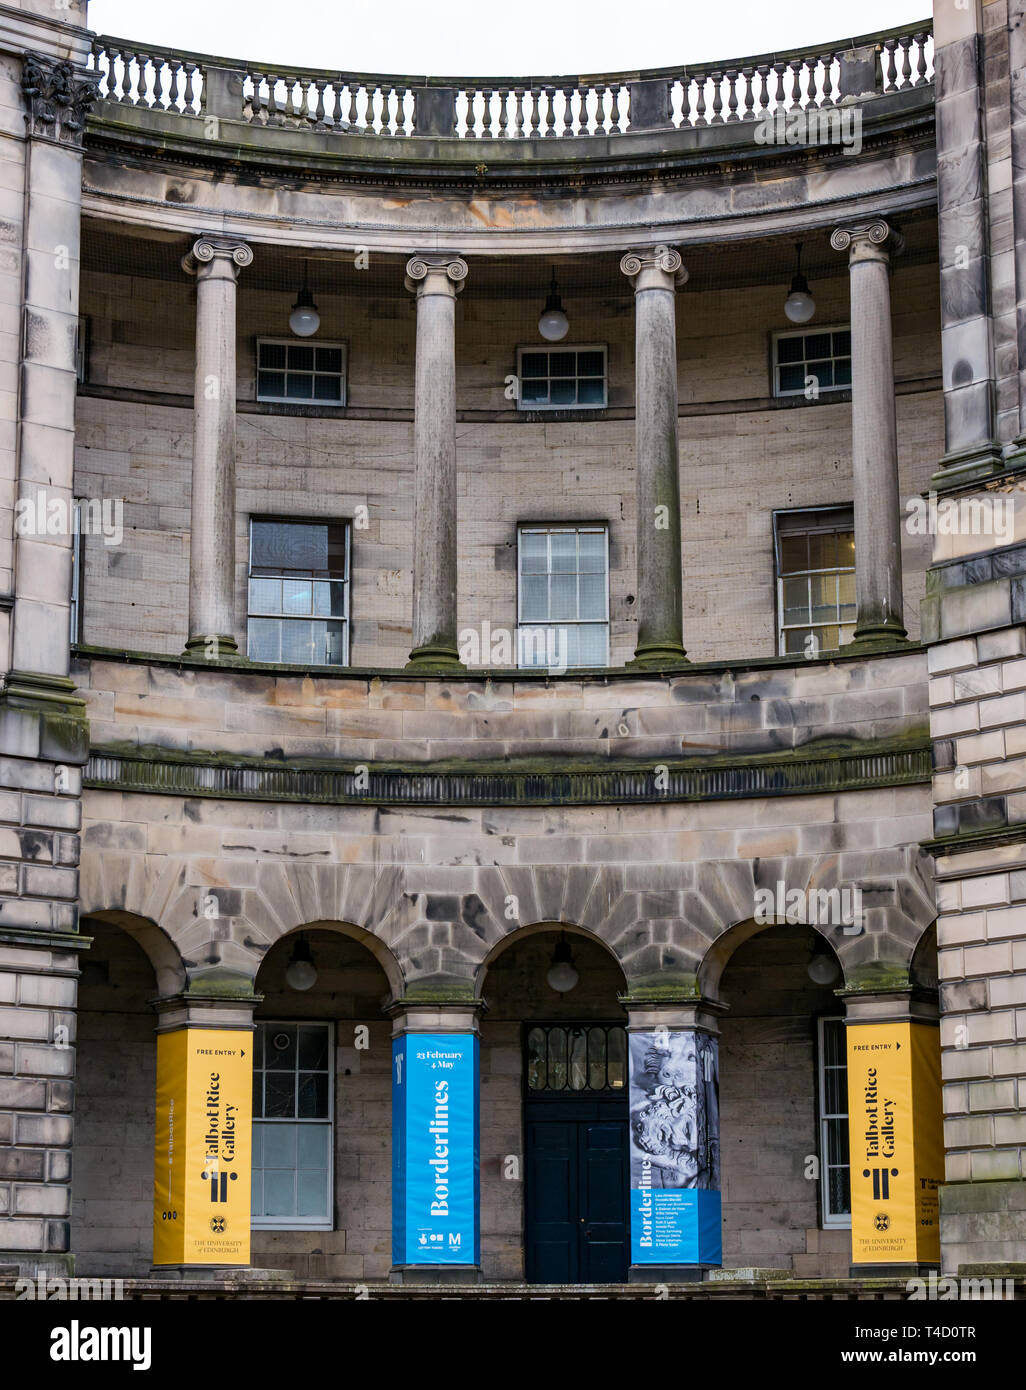 Old College quad avec Talbot Rice Art Gallery Collonade courbée avec bannières, Édimbourg, Écosse, Royaume-Uni Banque D'Images